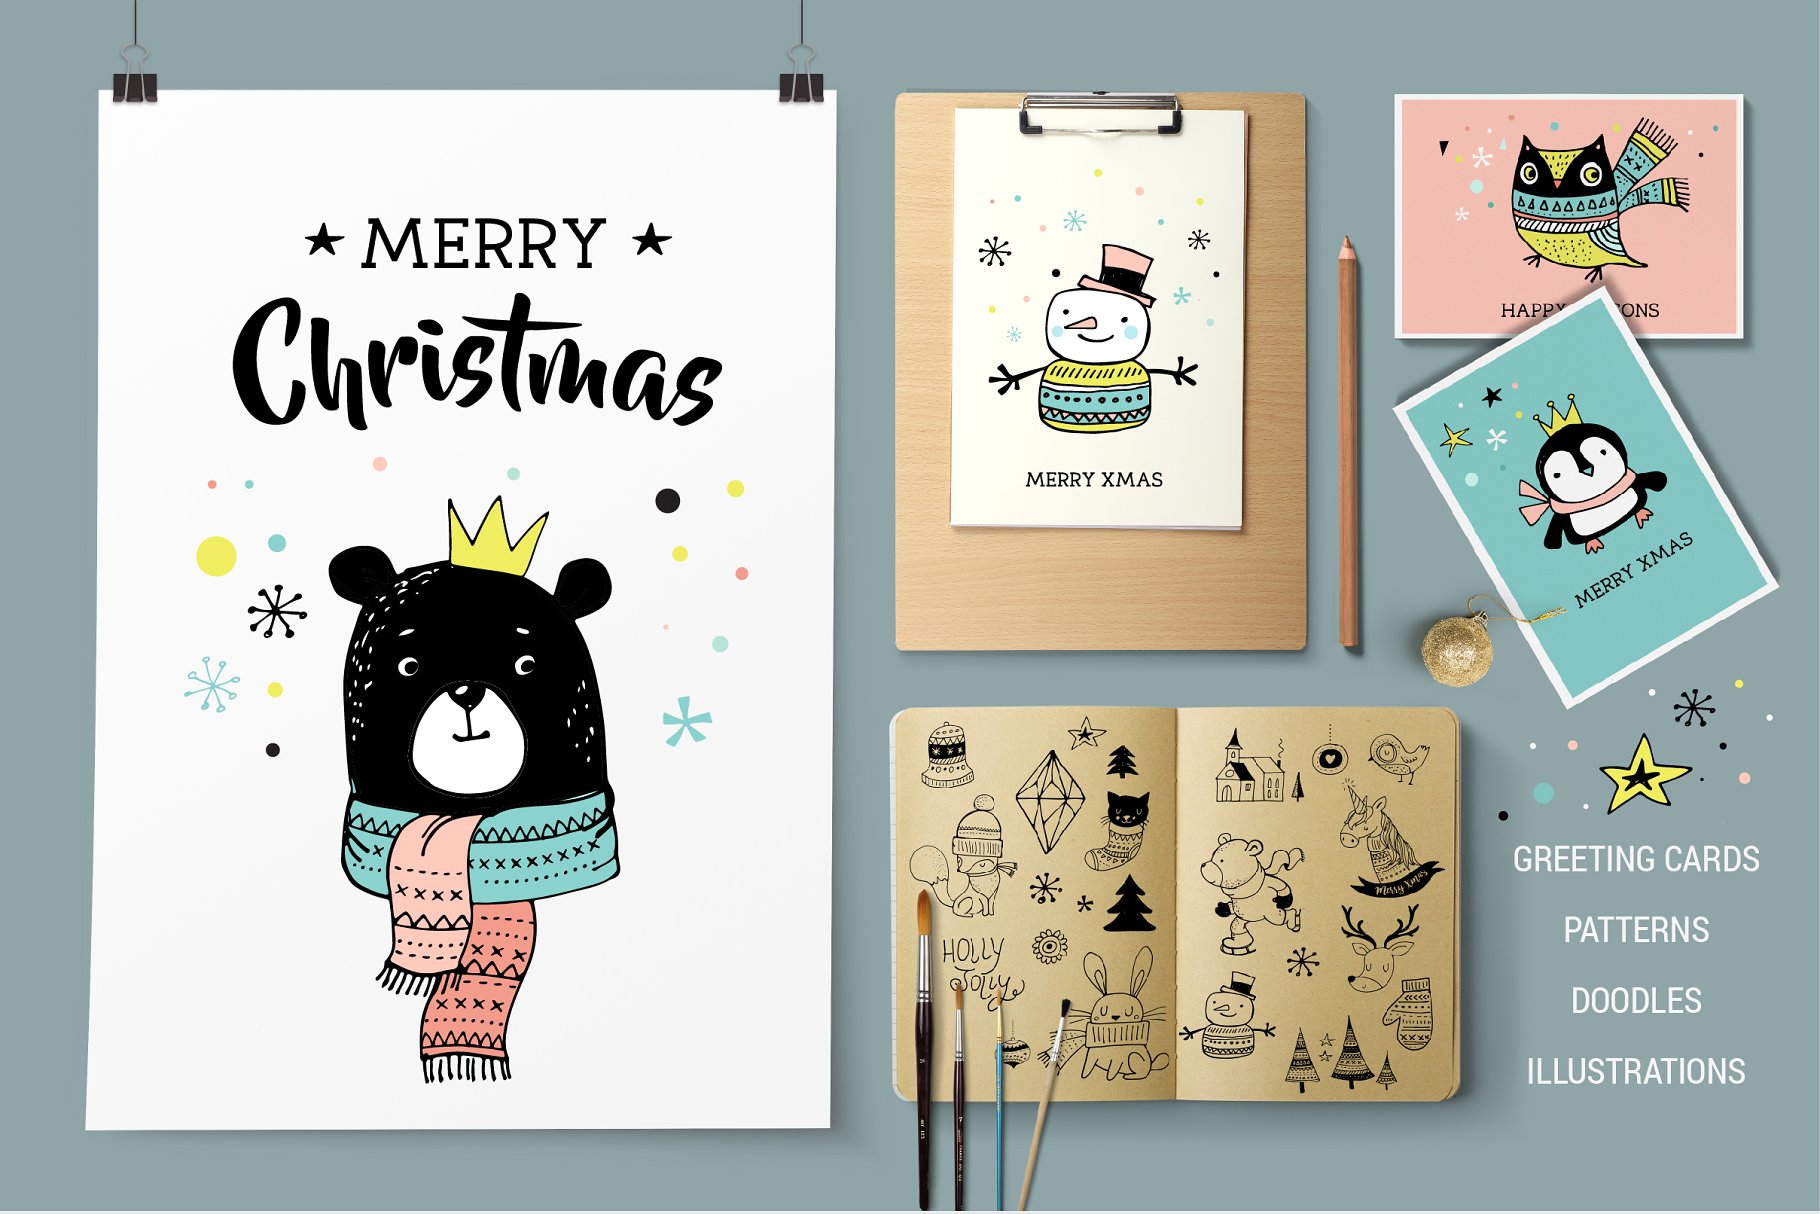 斯堪纳维亚风格快乐圣诞涂鸦元素手绘插画 Merry Christmas greetings & doodles插图